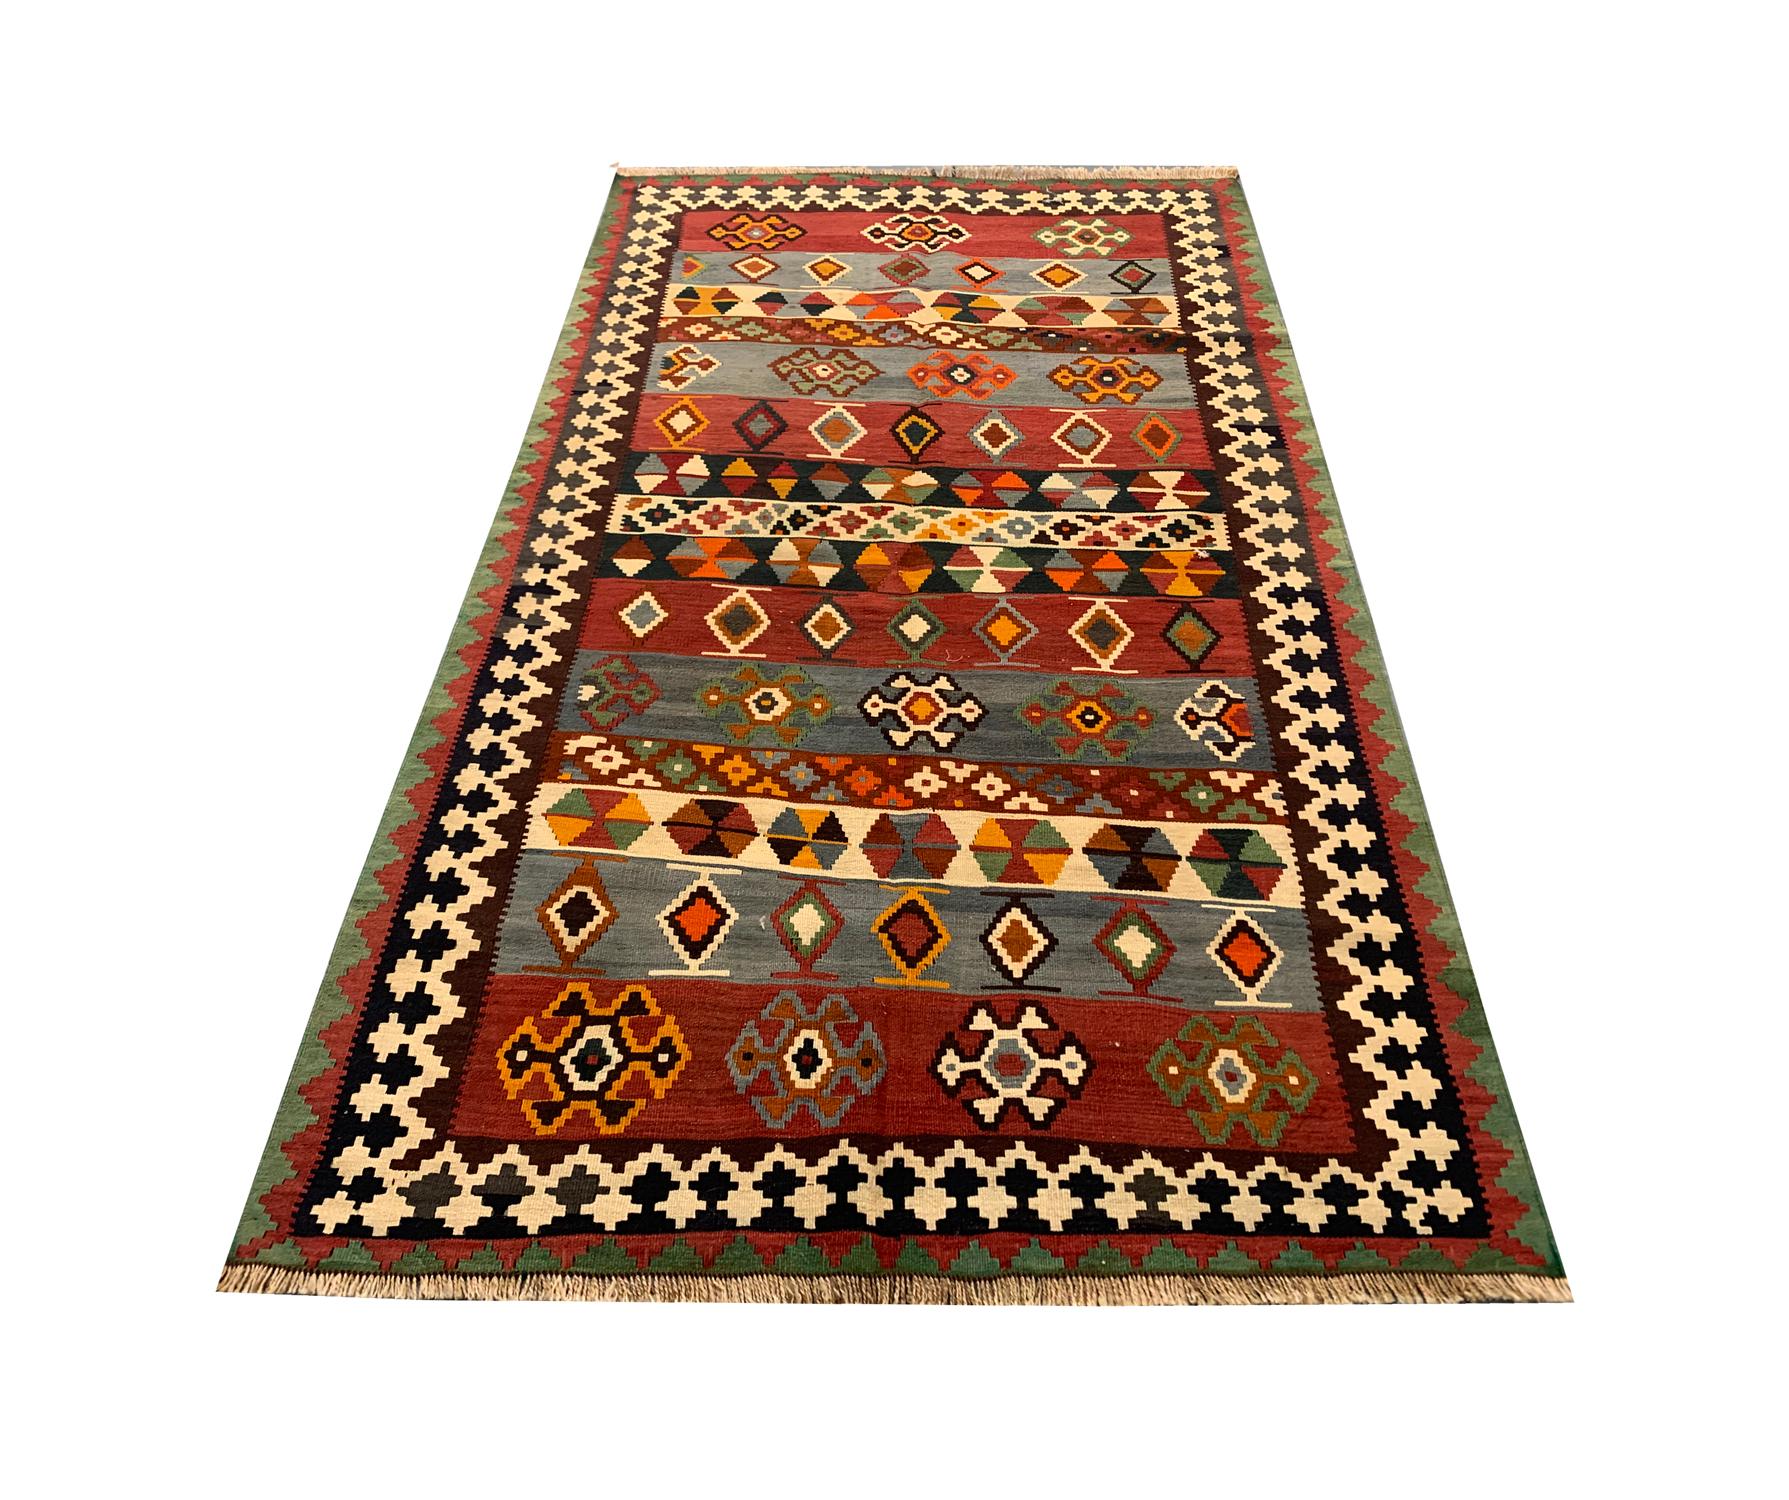 Dieser kühne geometrische Teppich ist ein antikes Stück. In den 1900er Jahren von Dorfwebern in Aserbaidschan von Hand gewebt. Das zentrale Design zeichnet sich durch eine kräftige Farbpalette mit satten roten, rostfarbenen, cremefarbenen und blauen